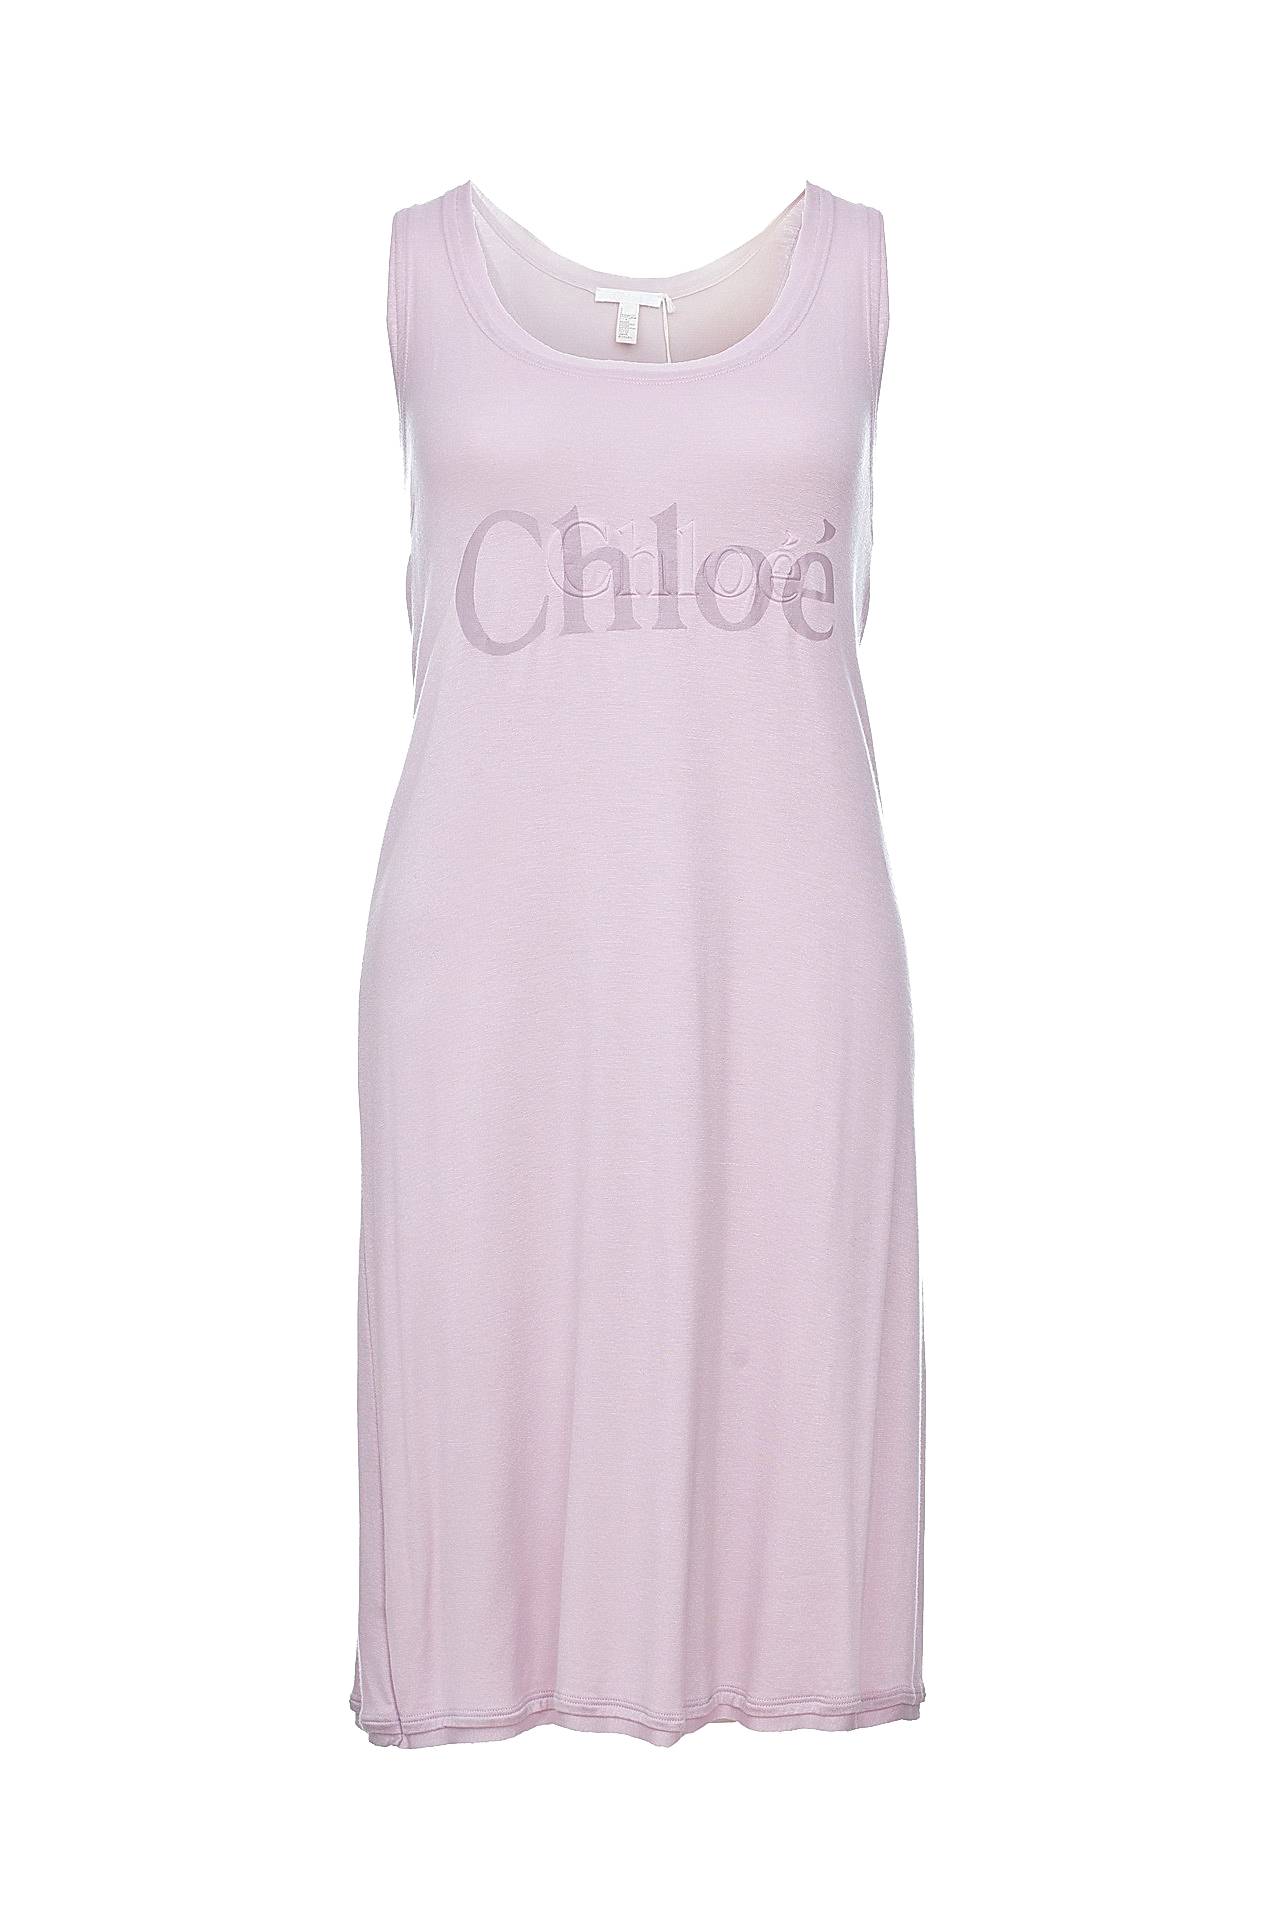 Одежда женская Платье CHLOE (A209497/19). Купить за 9250 руб.